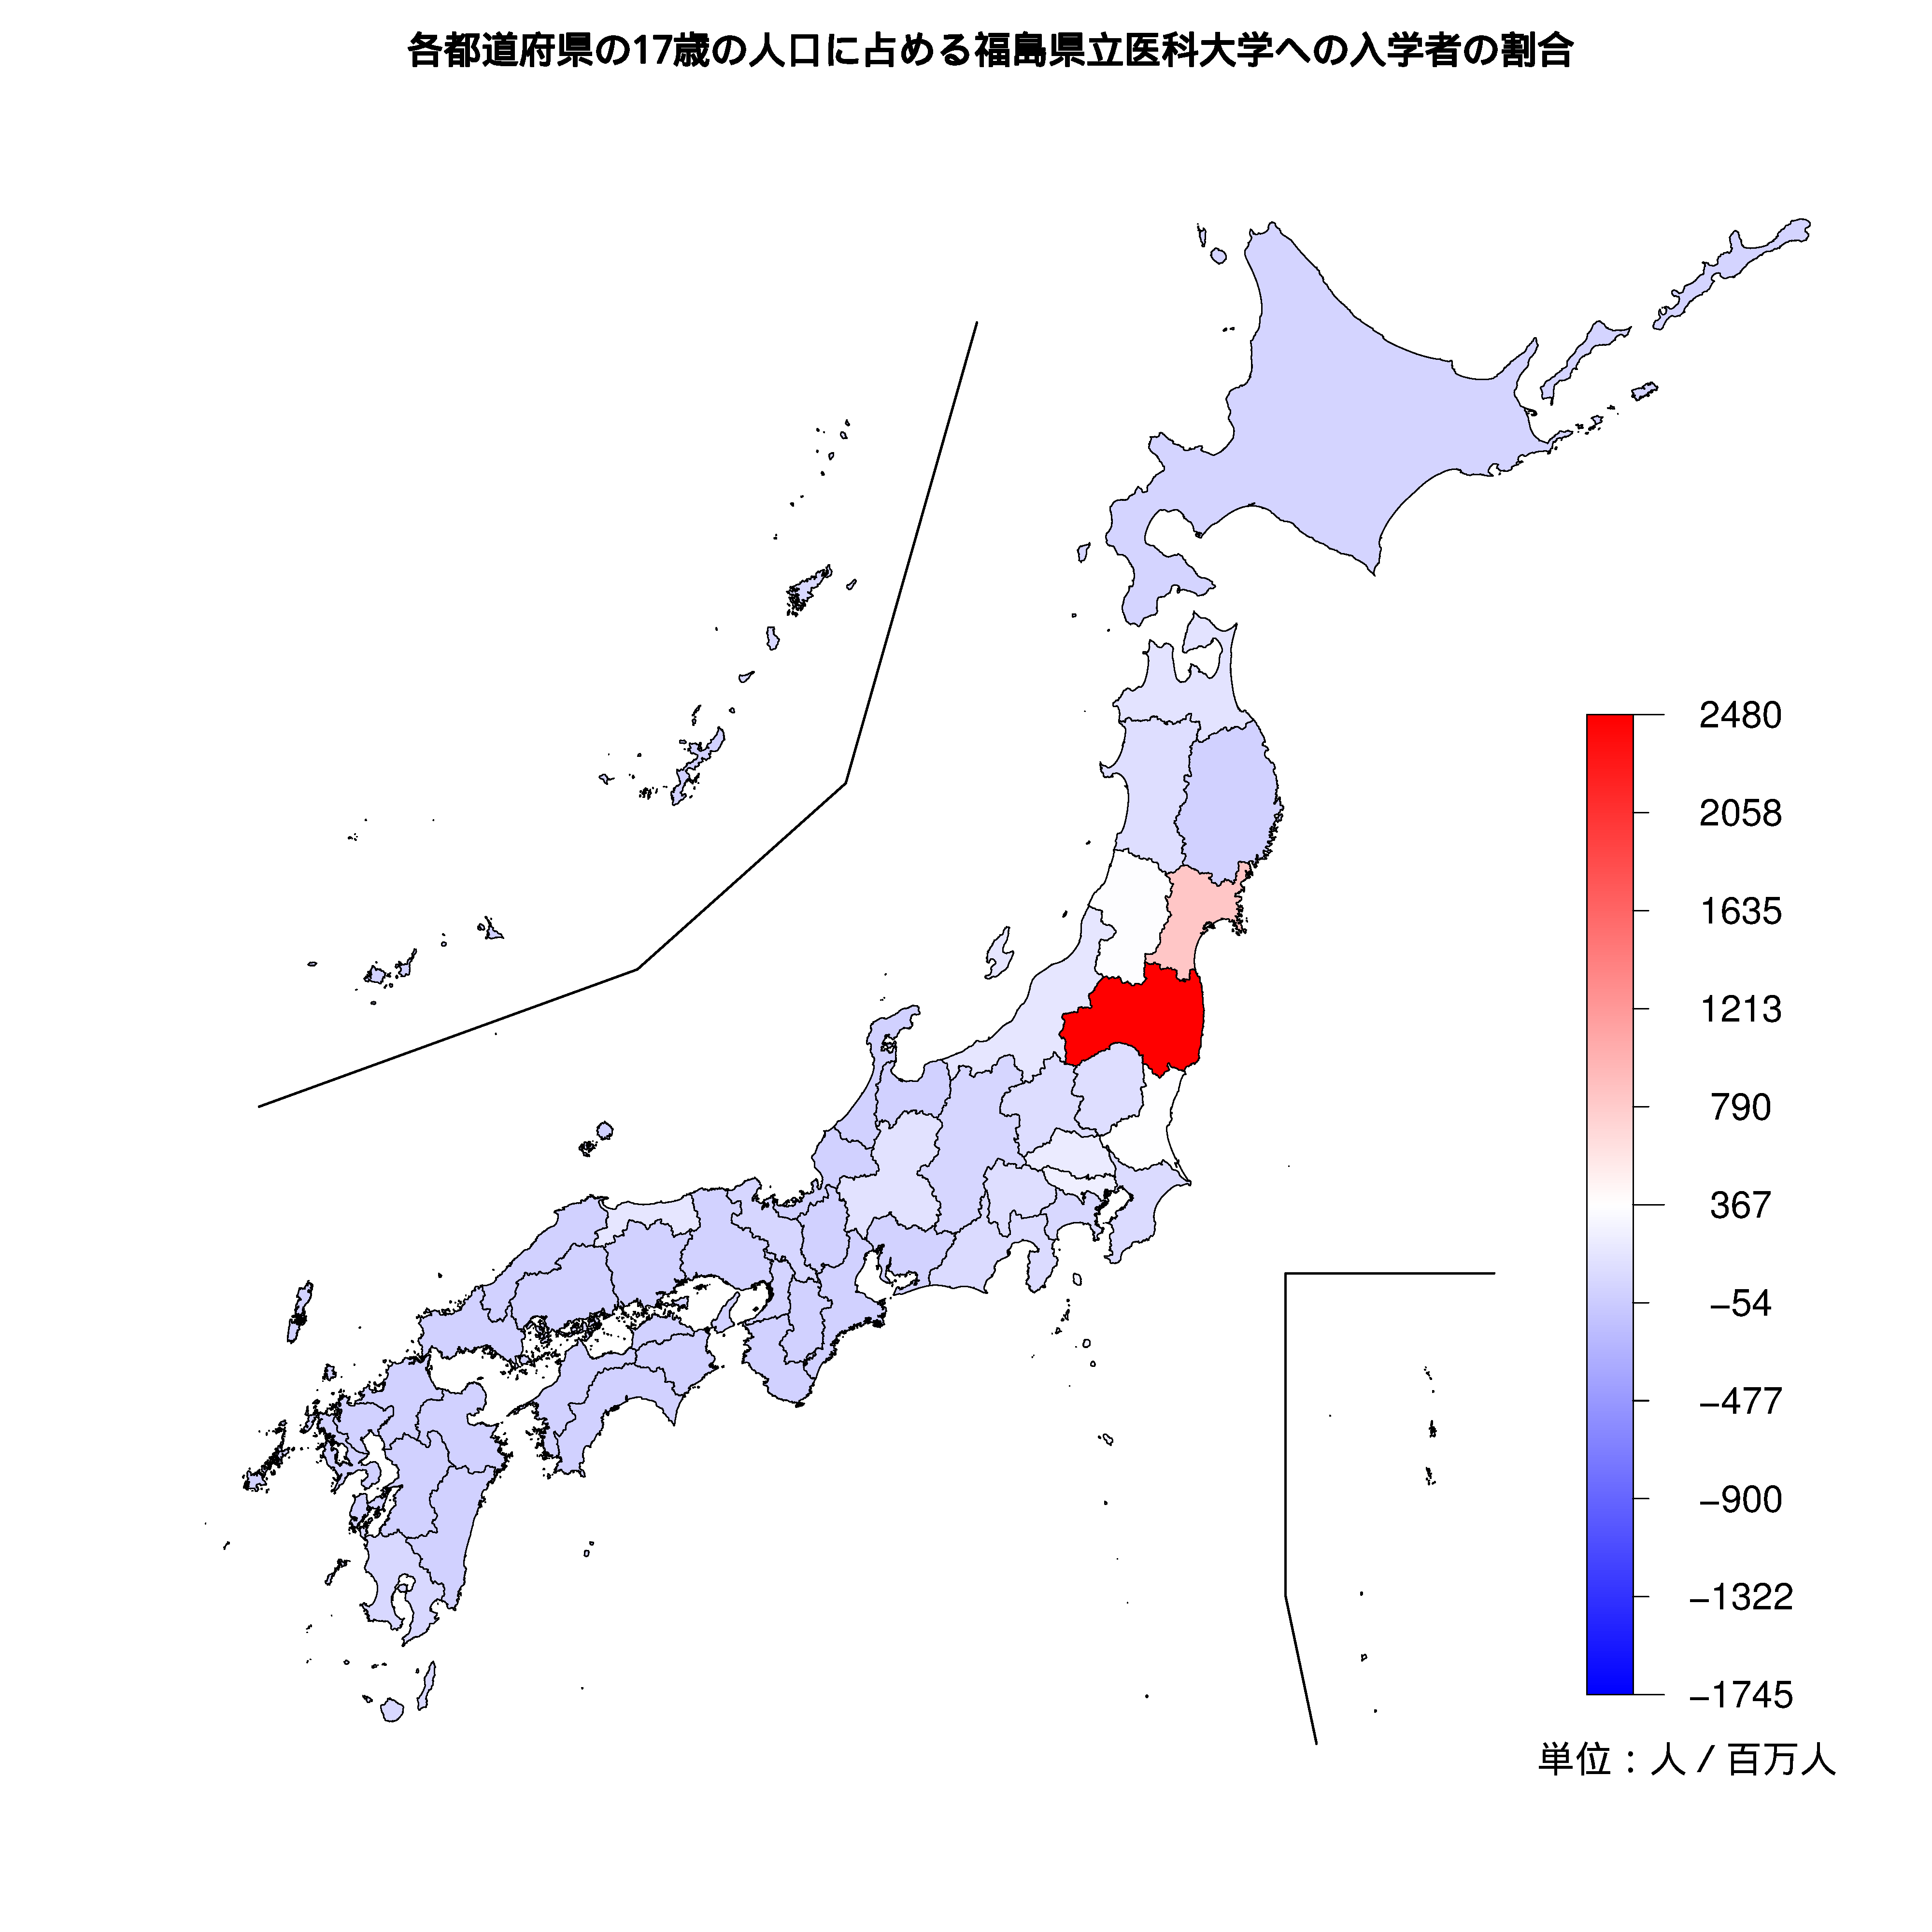 福島県立医科大学への入学者が多い都道府県の色分け地図